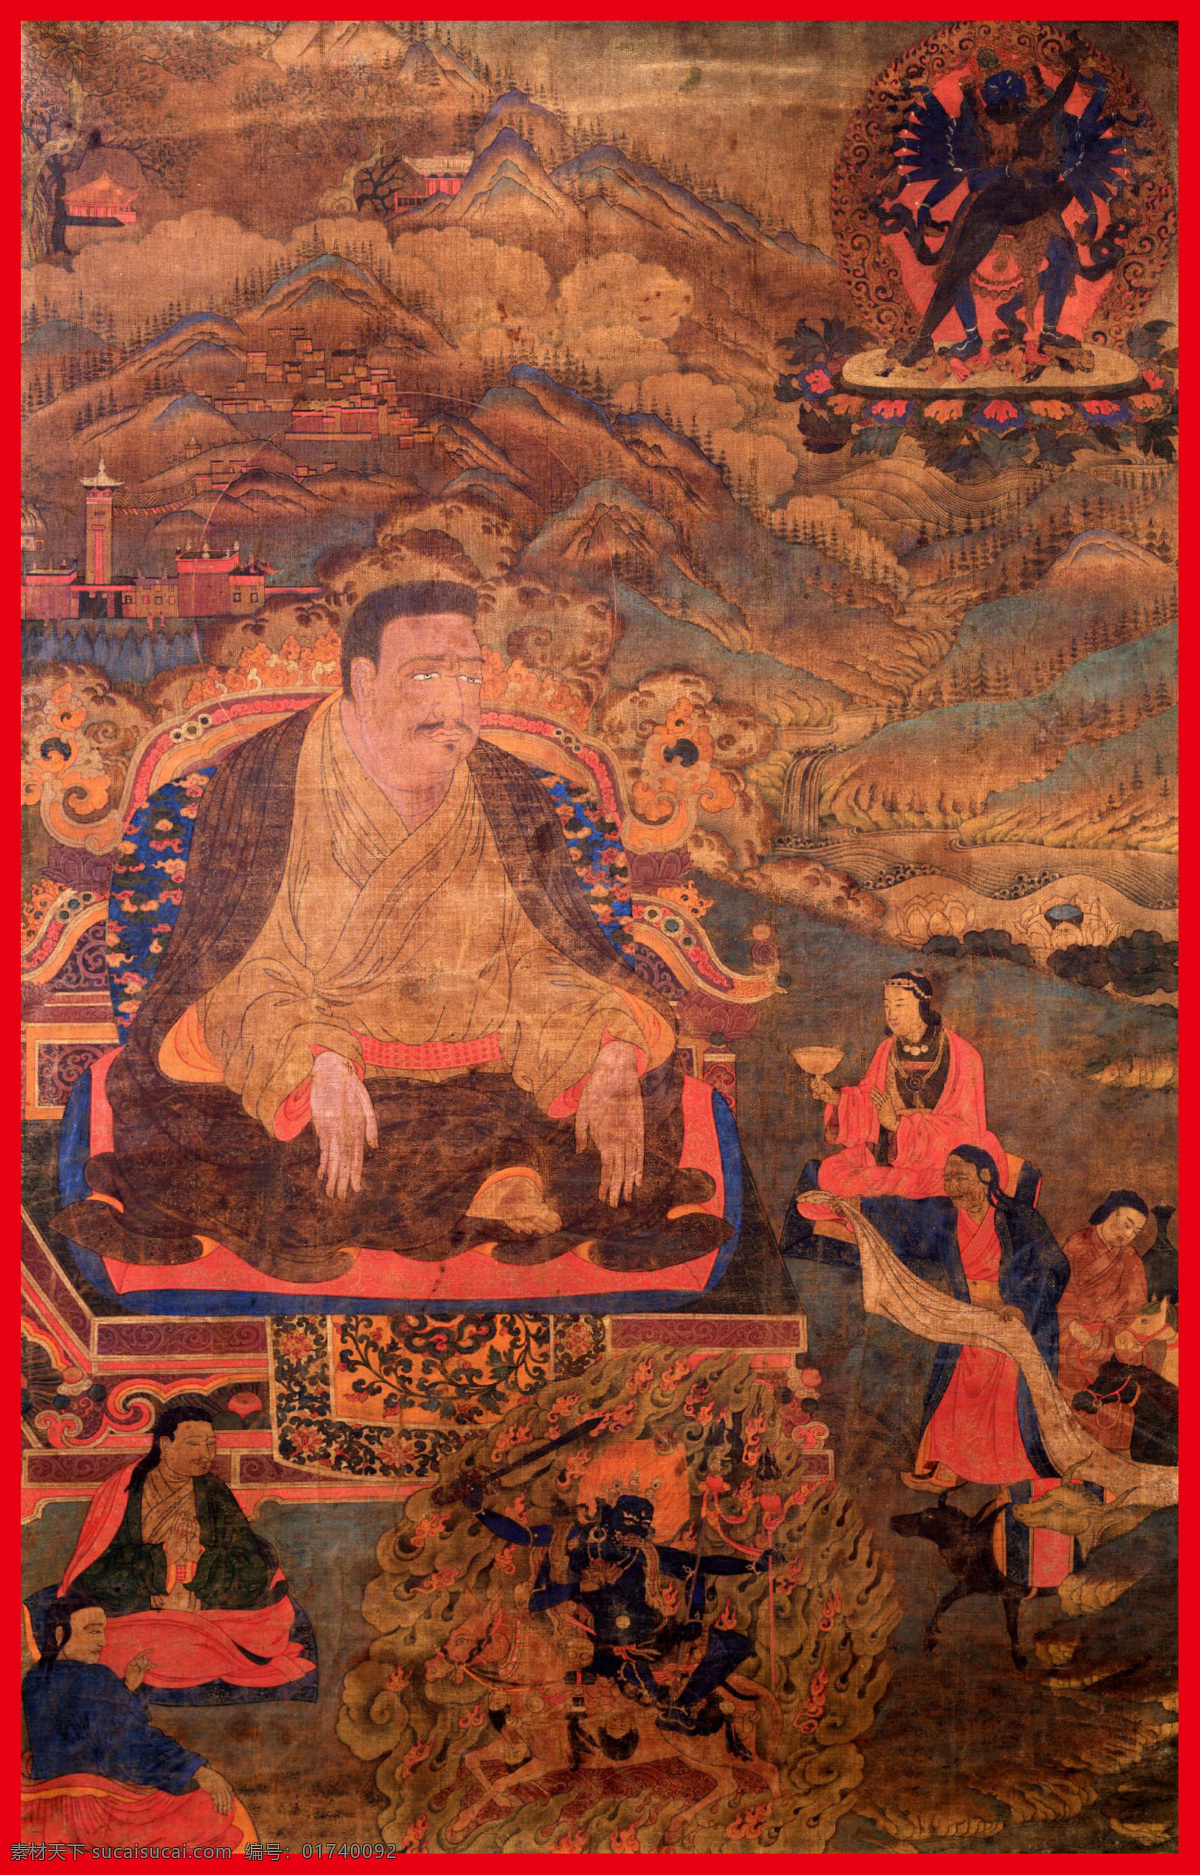 成就 传承 佛 佛教 菩萨 唐卡 文化艺术 老唐卡 金刚上师 西藏 藏传 密宗 法器 成就者 大德 喇嘛 活佛 宗教信仰